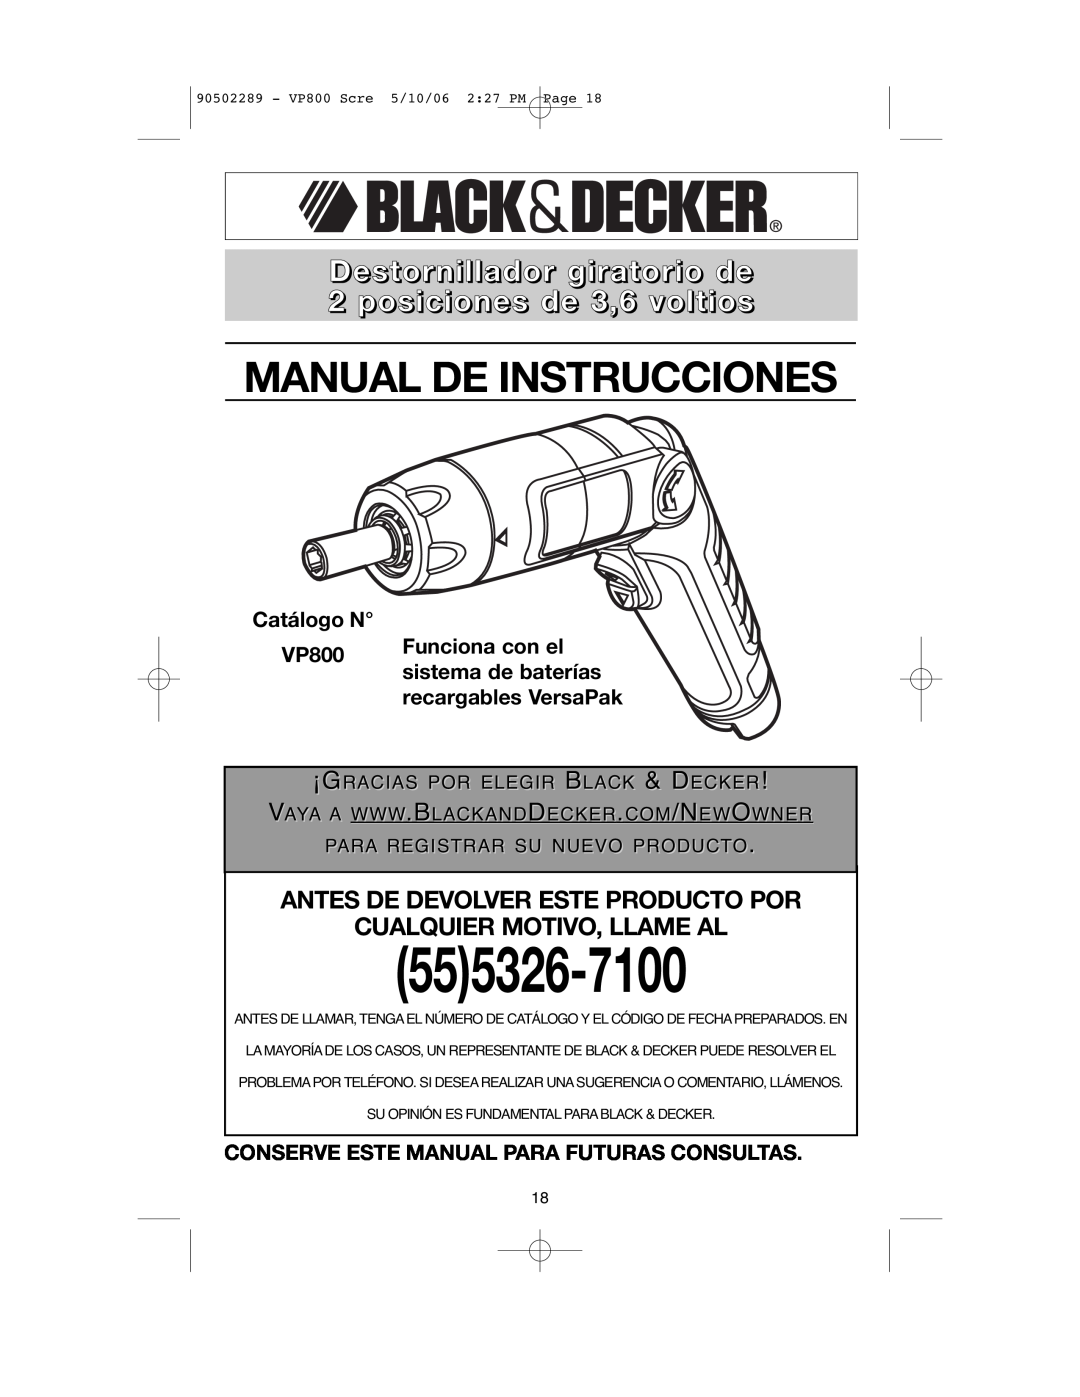 Black & Decker VP800 Destornillador giratorio de 2 posiciones de 3,6 voltios, Catálogo N, Funciona con el, 555326-7100 